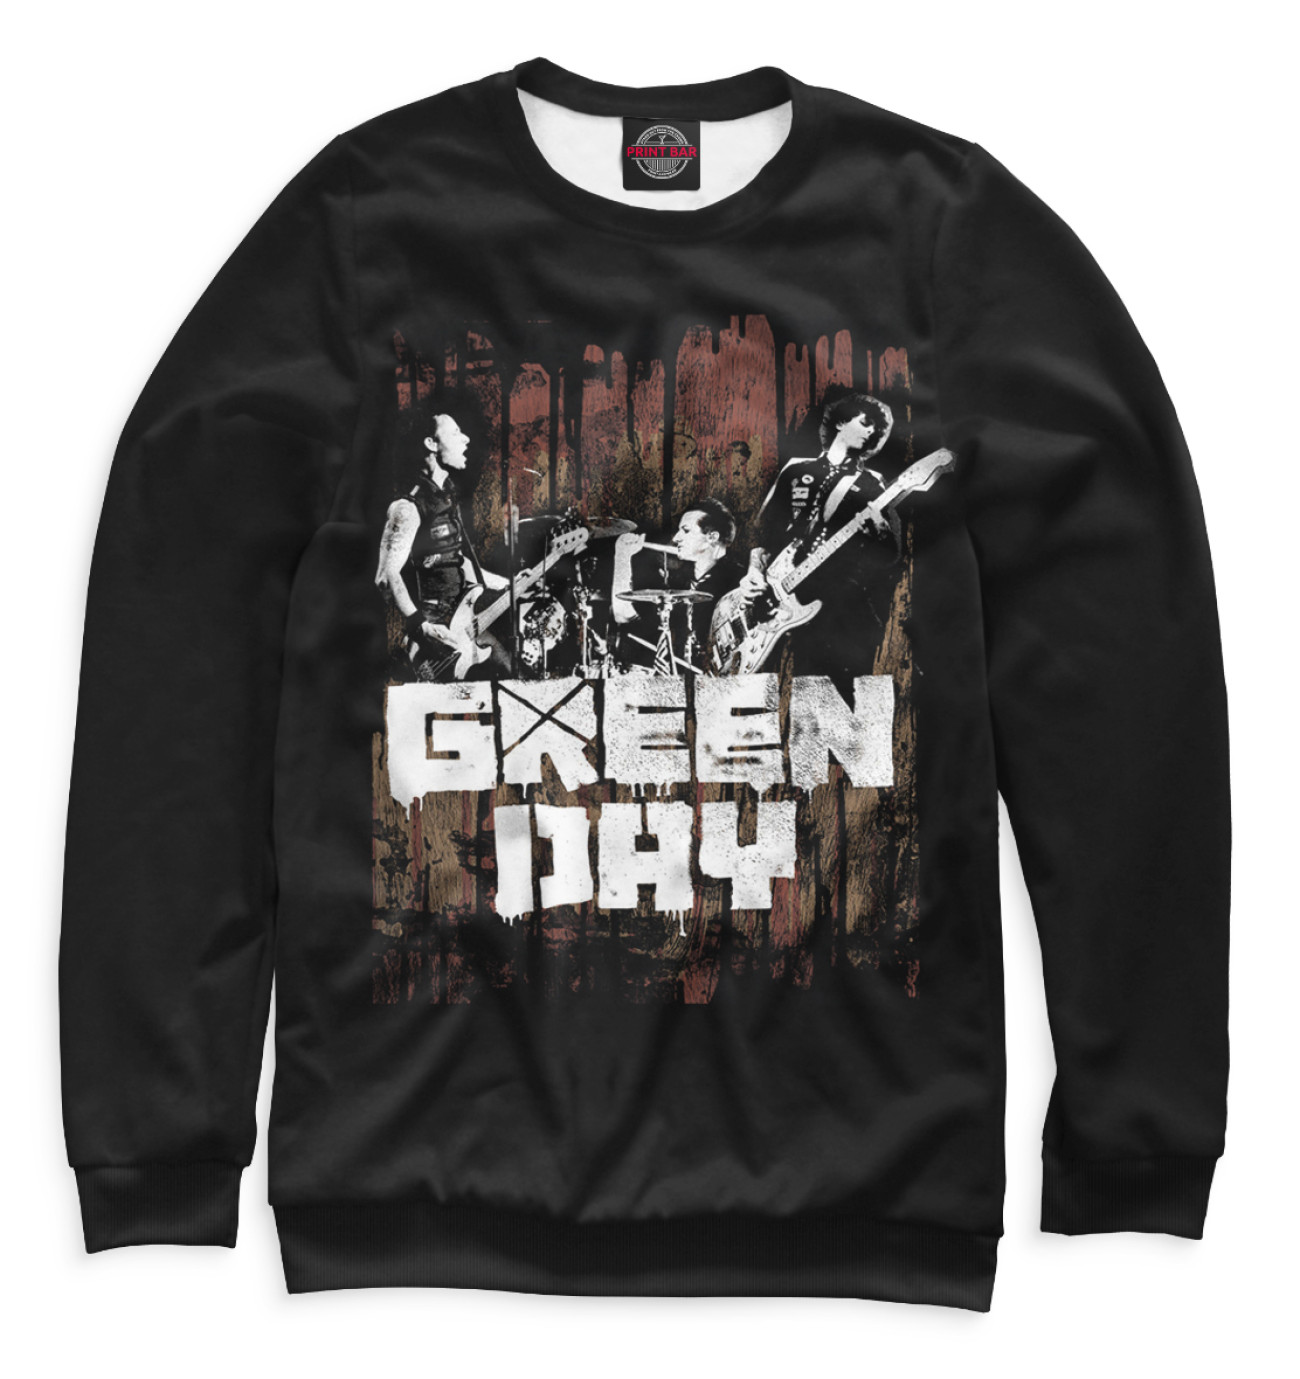 Женский Свитшот Green Day, артикул: GRE-821168-swi-1